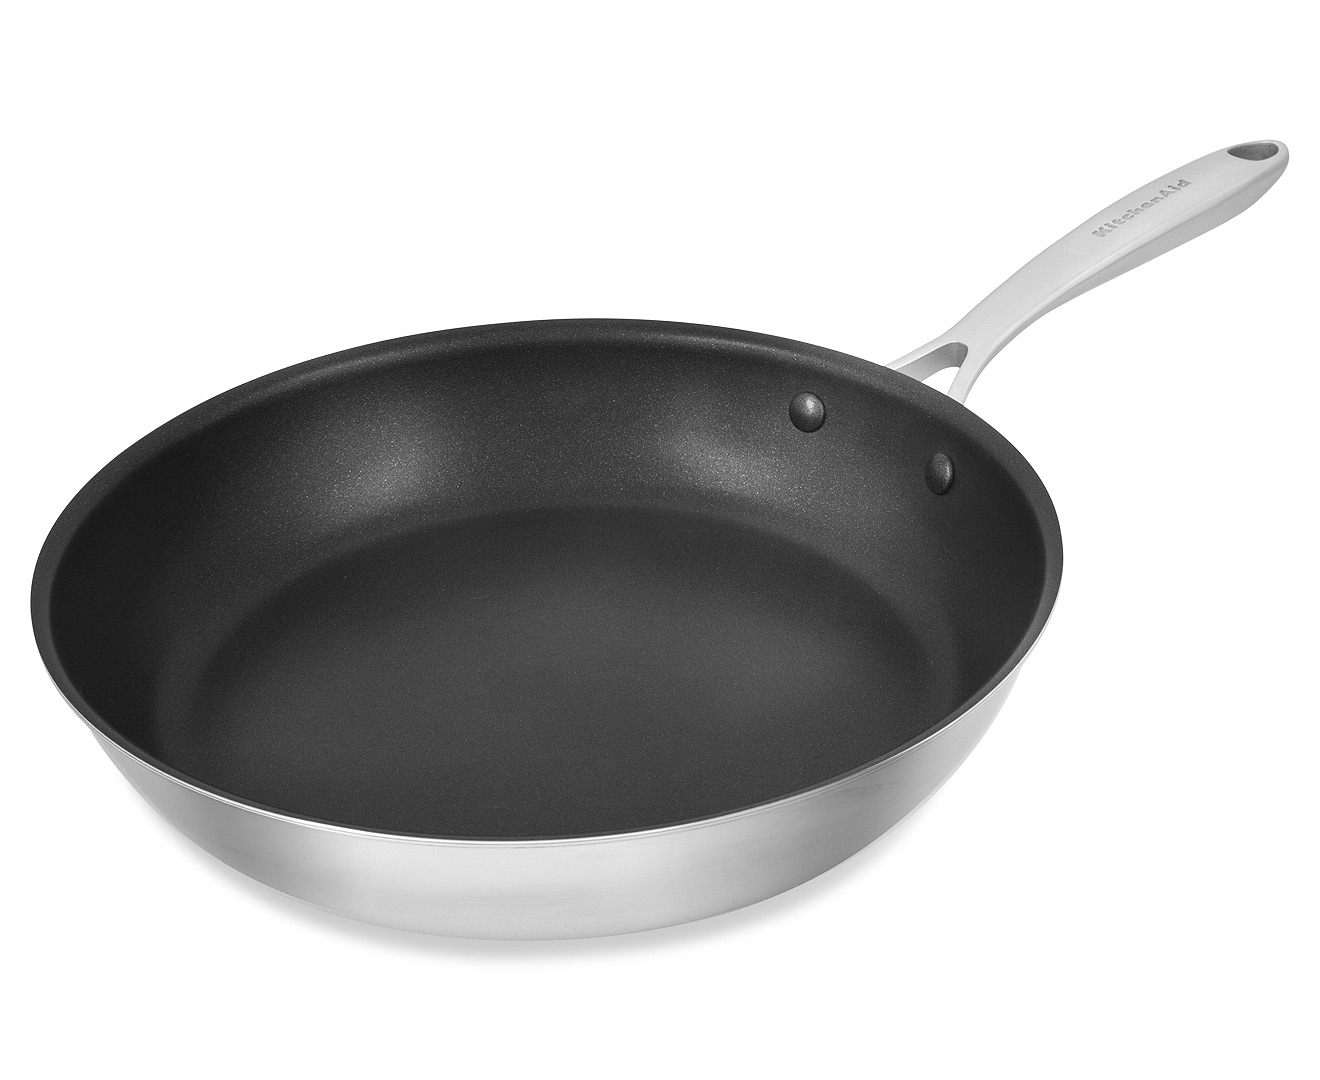 KitchenAid 31cm Copper Core Non-Stick Frypan - Silver/Black